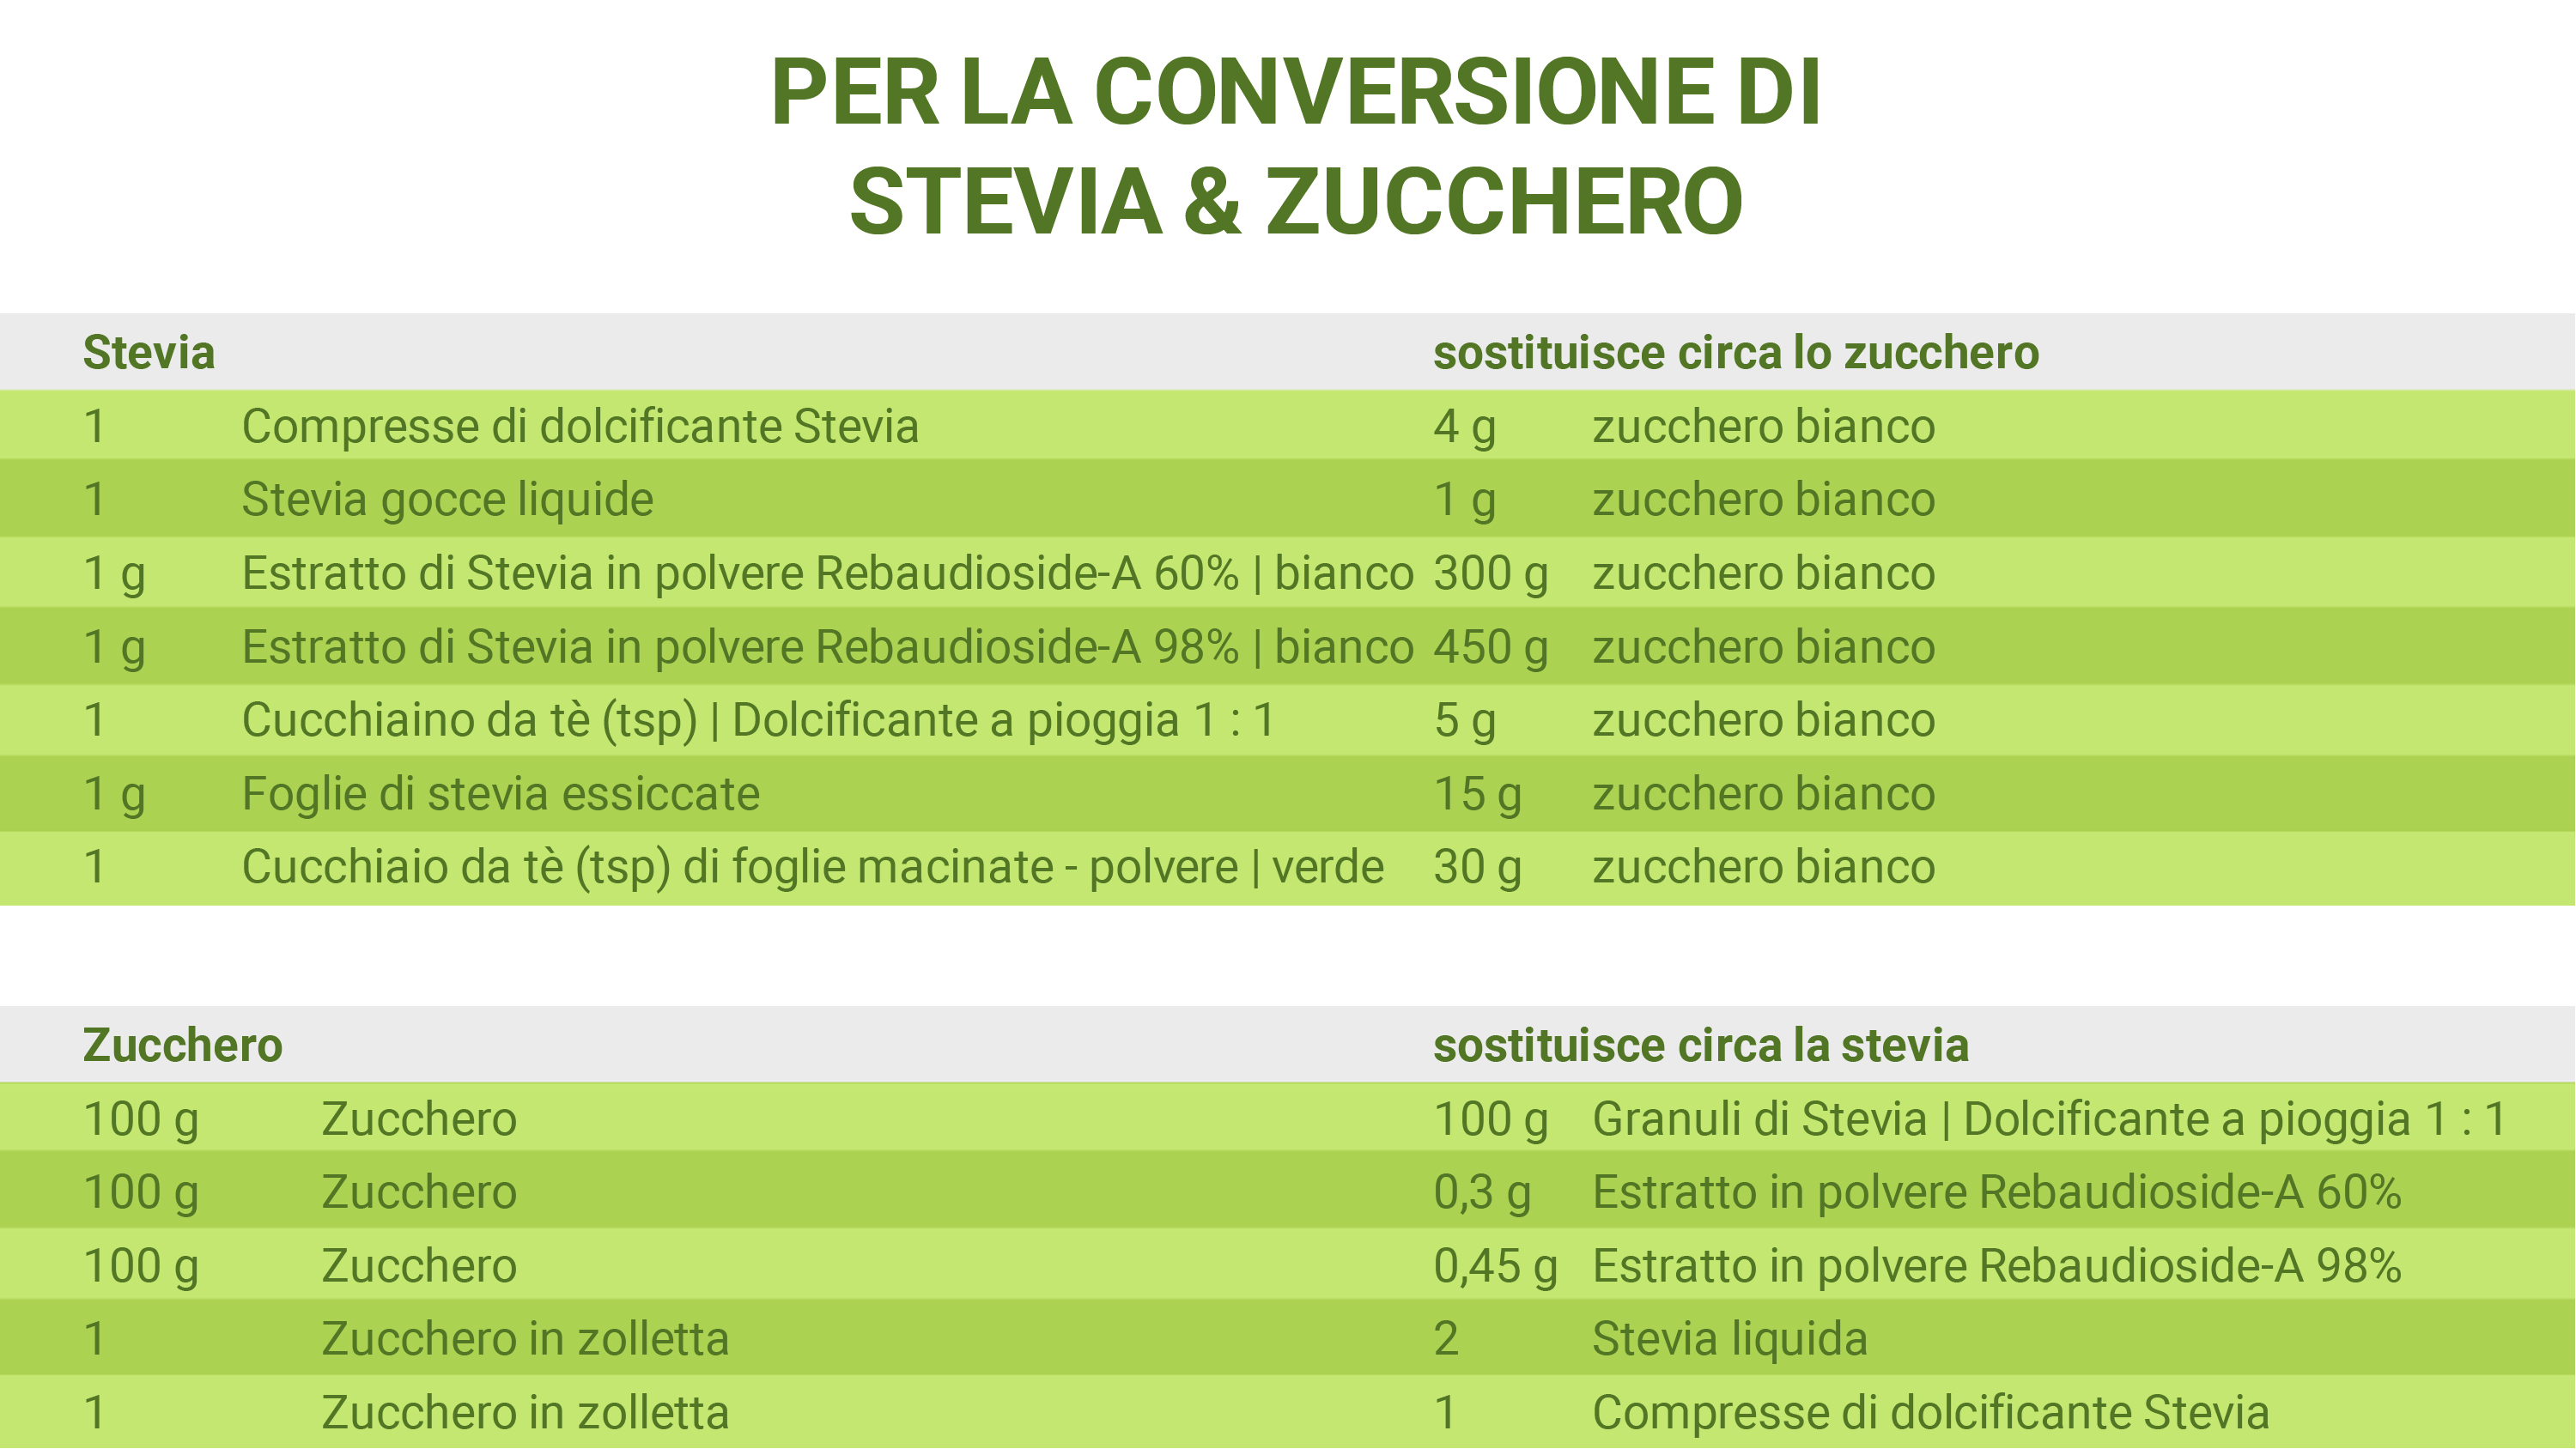 Come posso sostituire lo zucchero con la Stevia? Domande e risposte